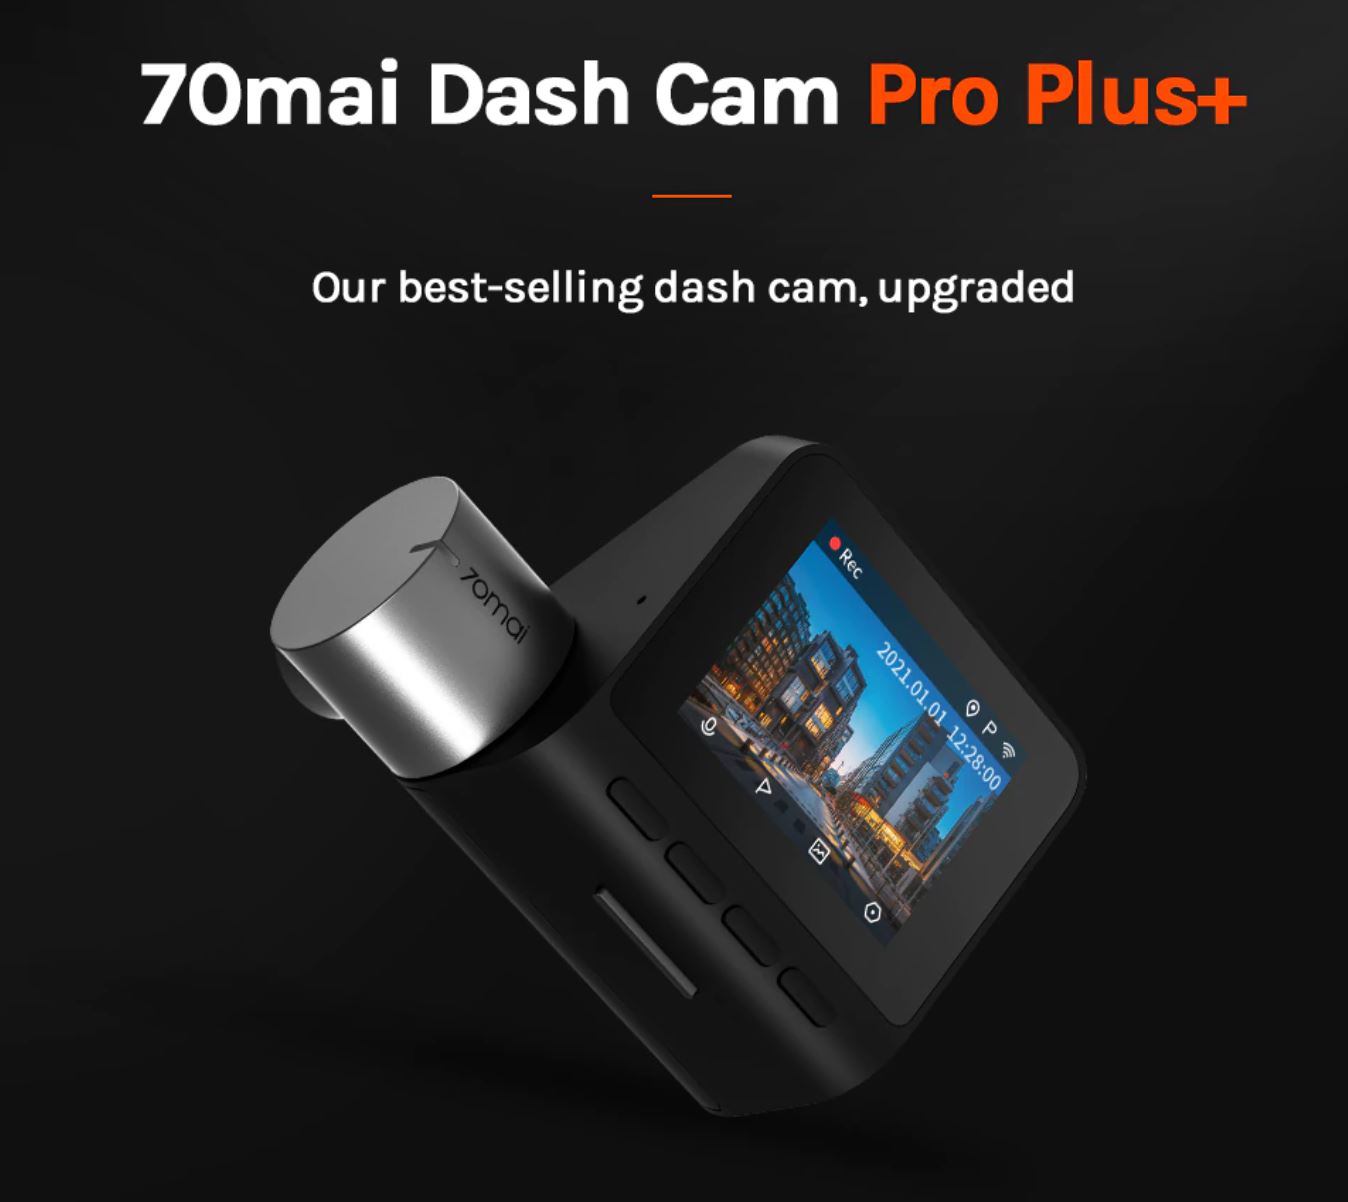 artykuły motoryzacyjne - promocja AliExpress - kamera samochodowa 70mai Dash Cam Pro Plus+